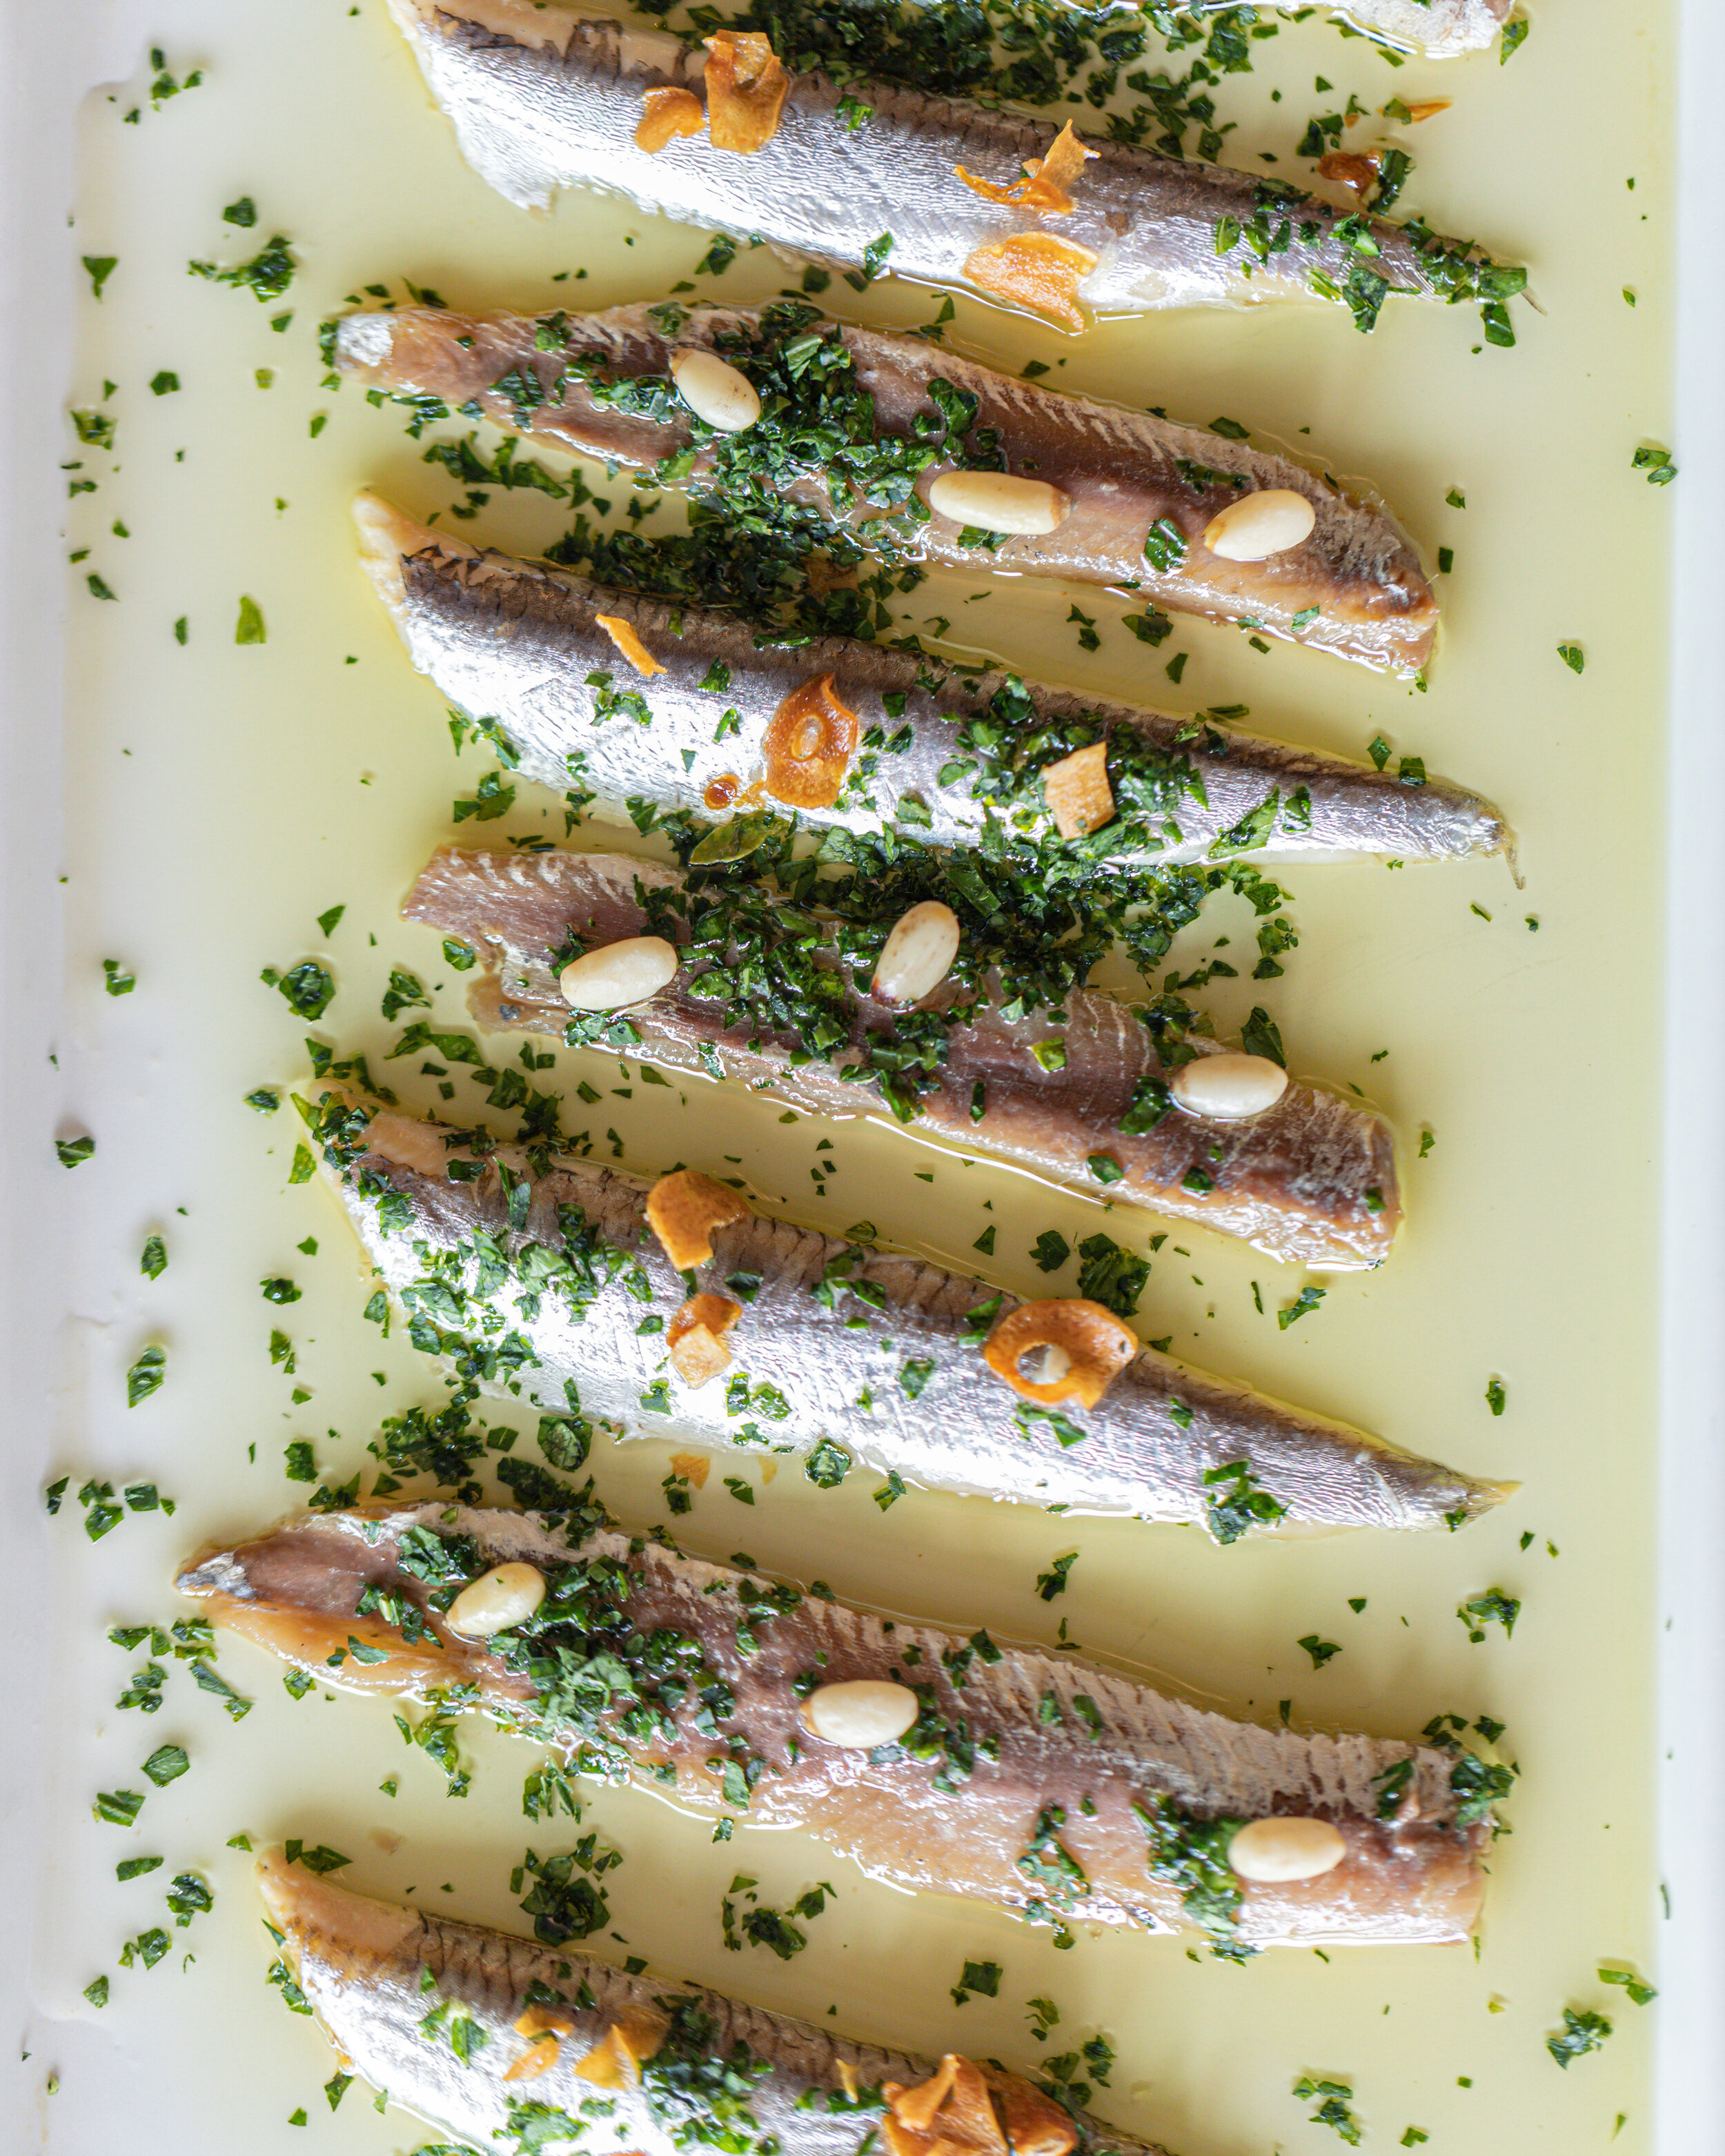 Dúo de anchoa y boquerón con aceite de olivo con piñón y hojuelas de ajo 2.jpg